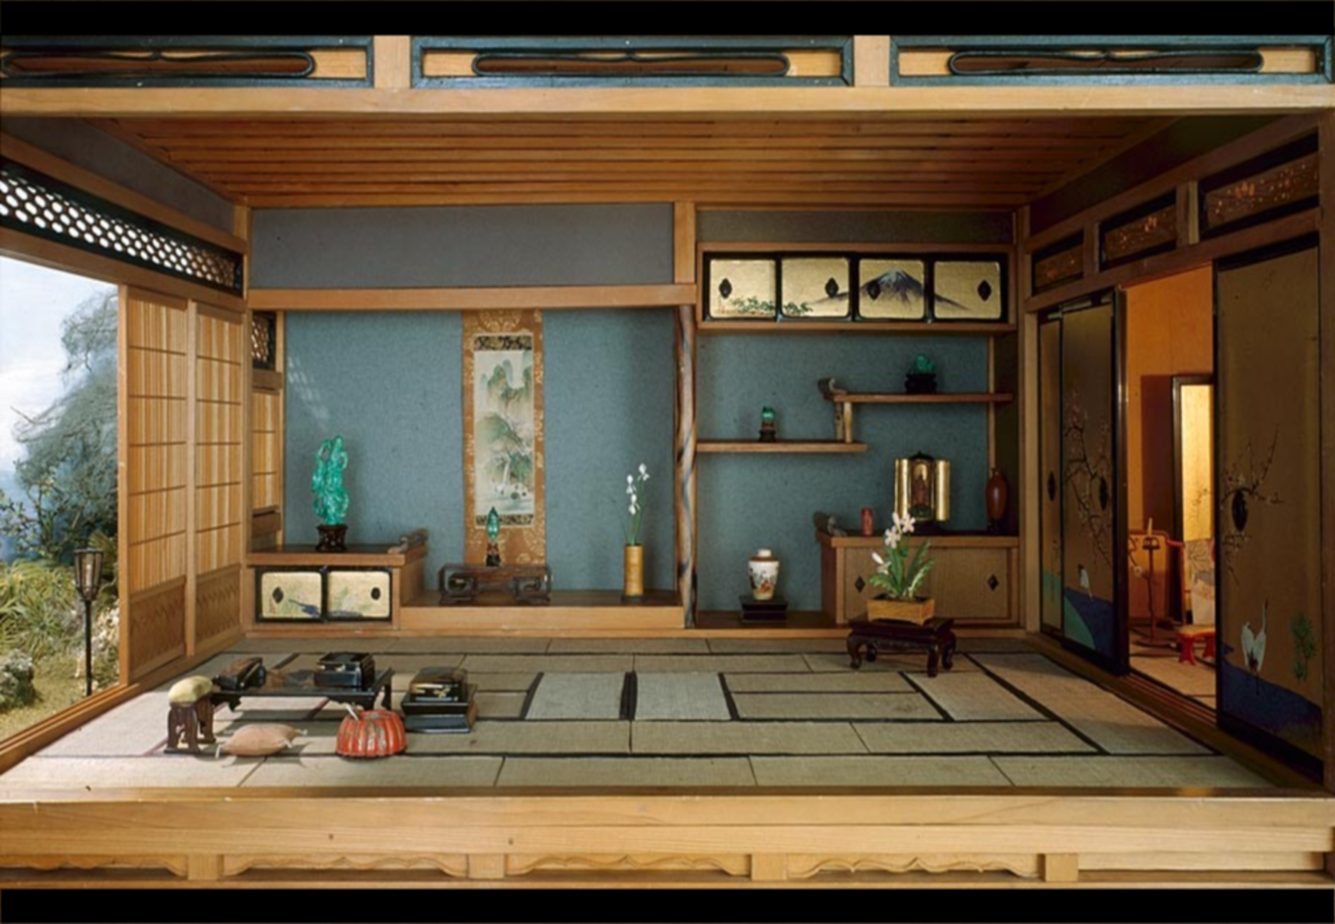 Kumpulan Design Interior Ruang Tamu Rumah Minimalis Kumpulan